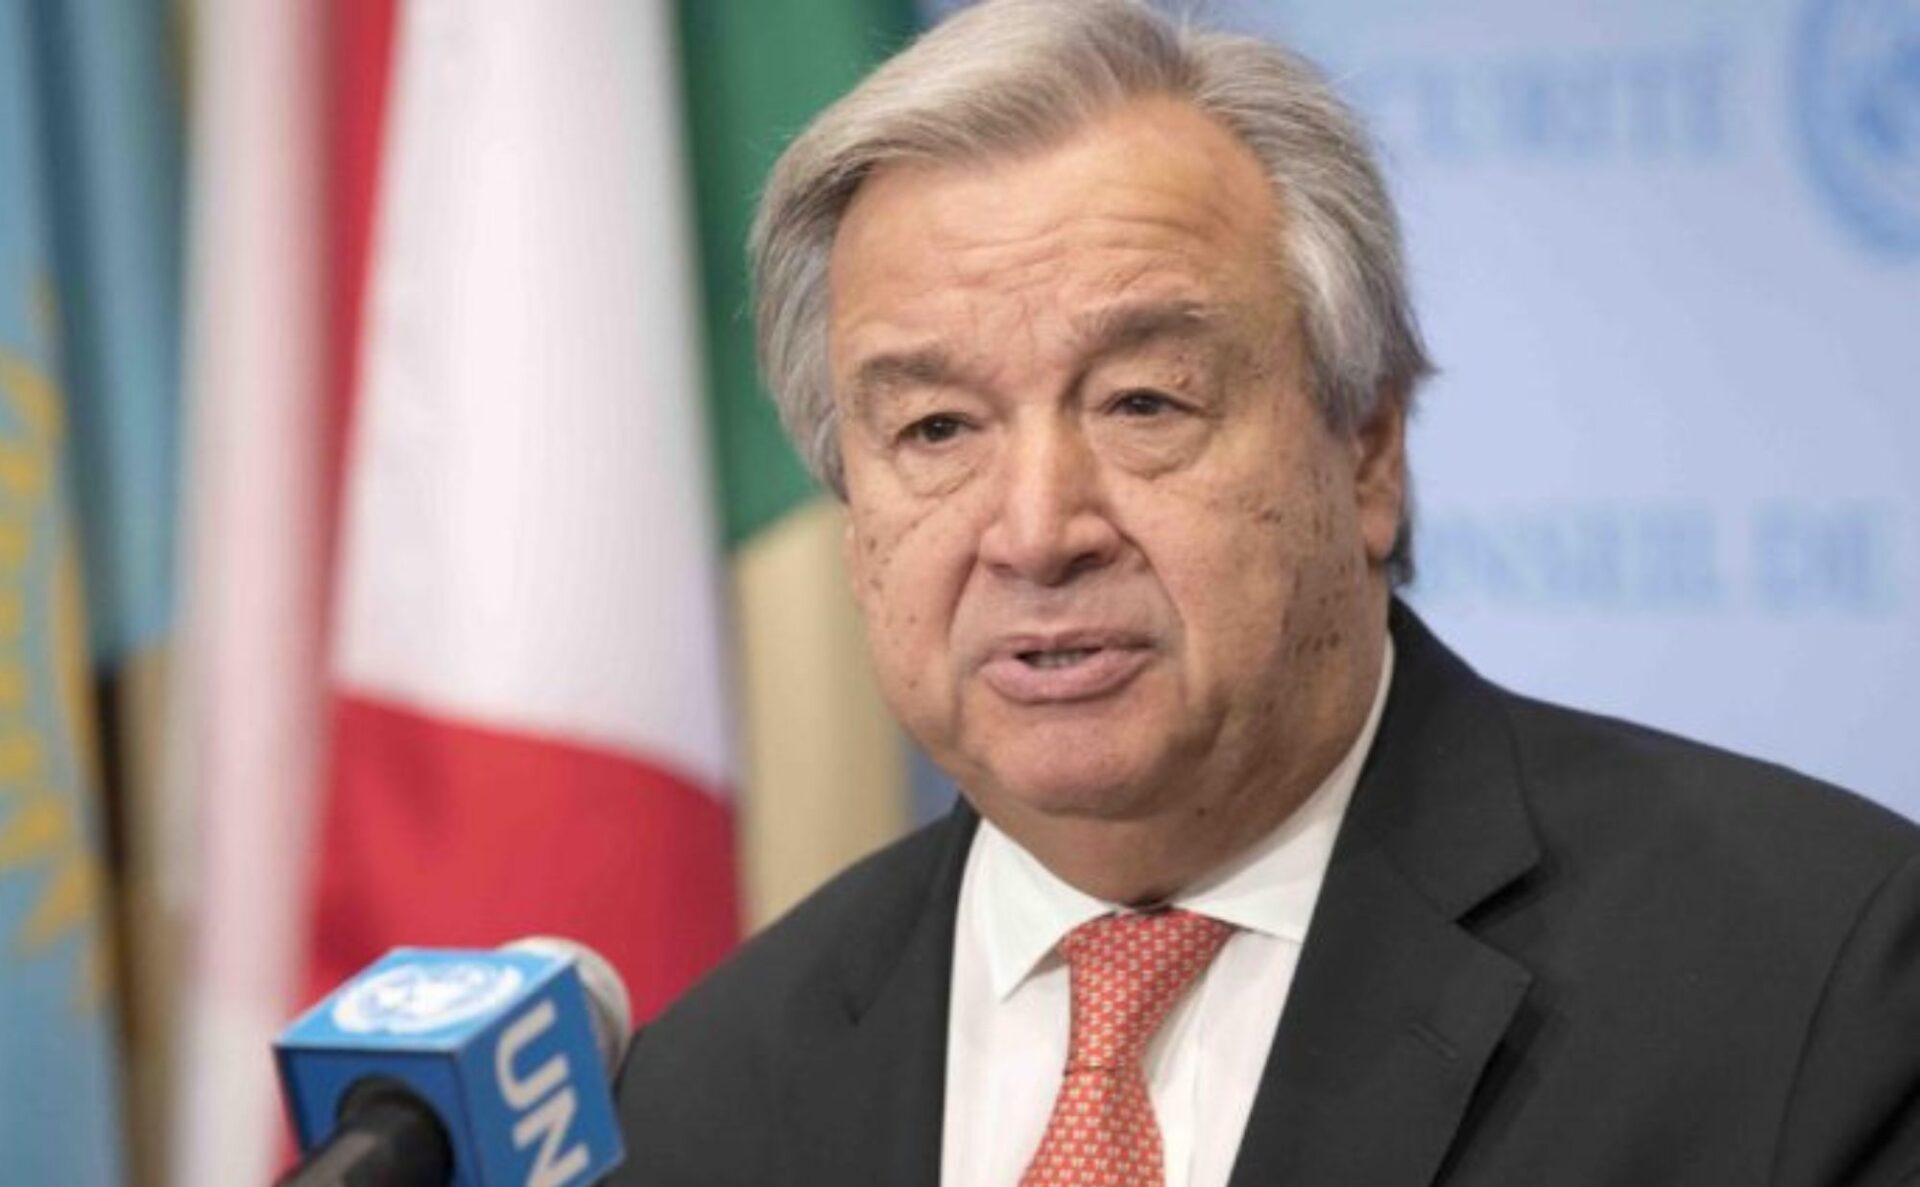 ONU responde petición de México: Expulsión de Ecuador depende de los Estados miembros